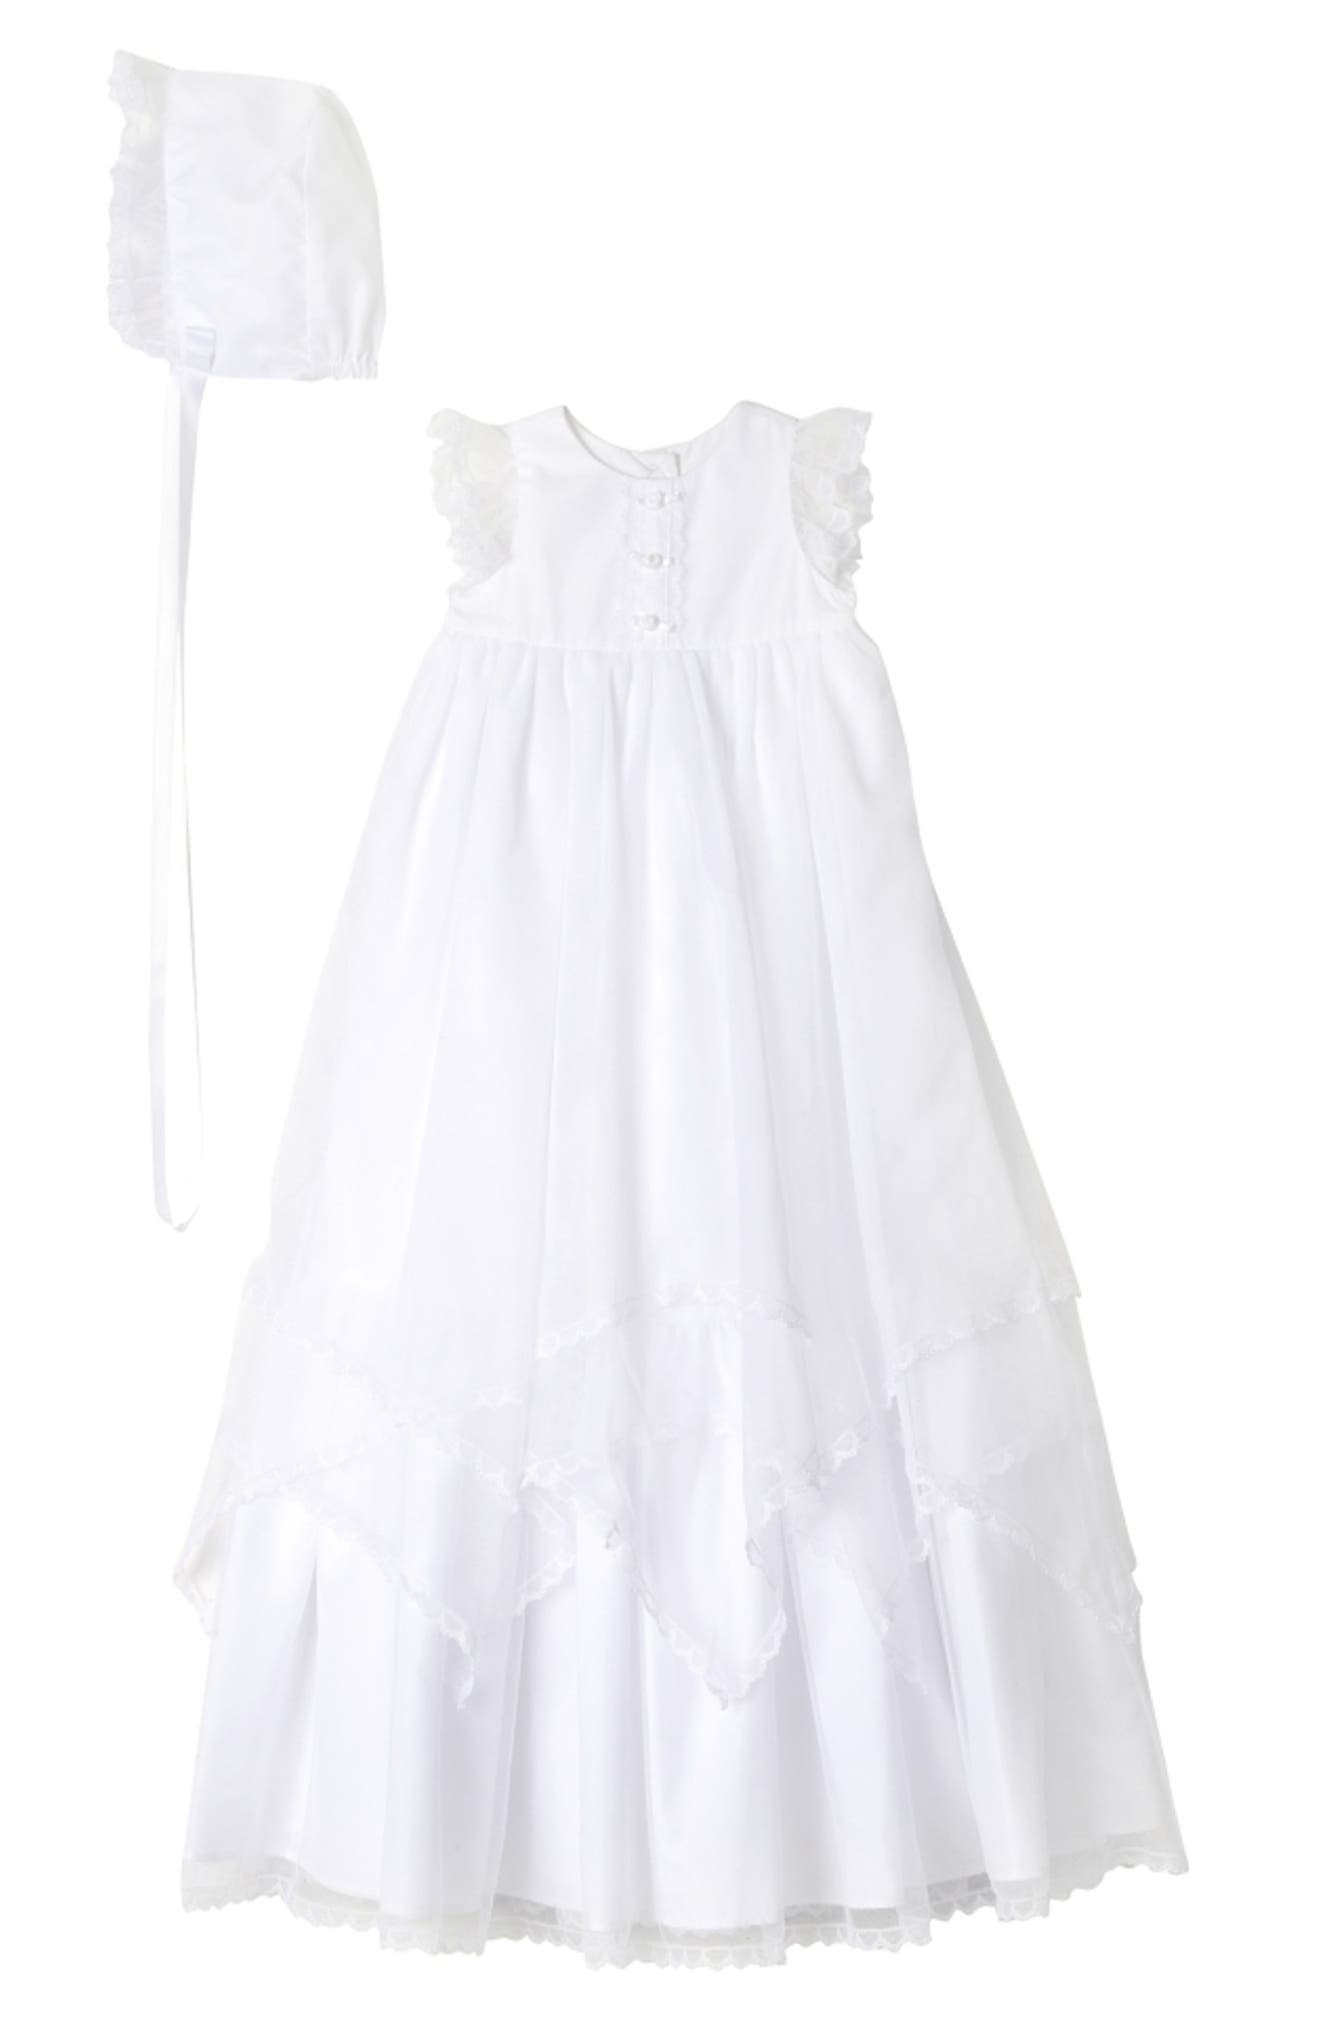 christening dresses online